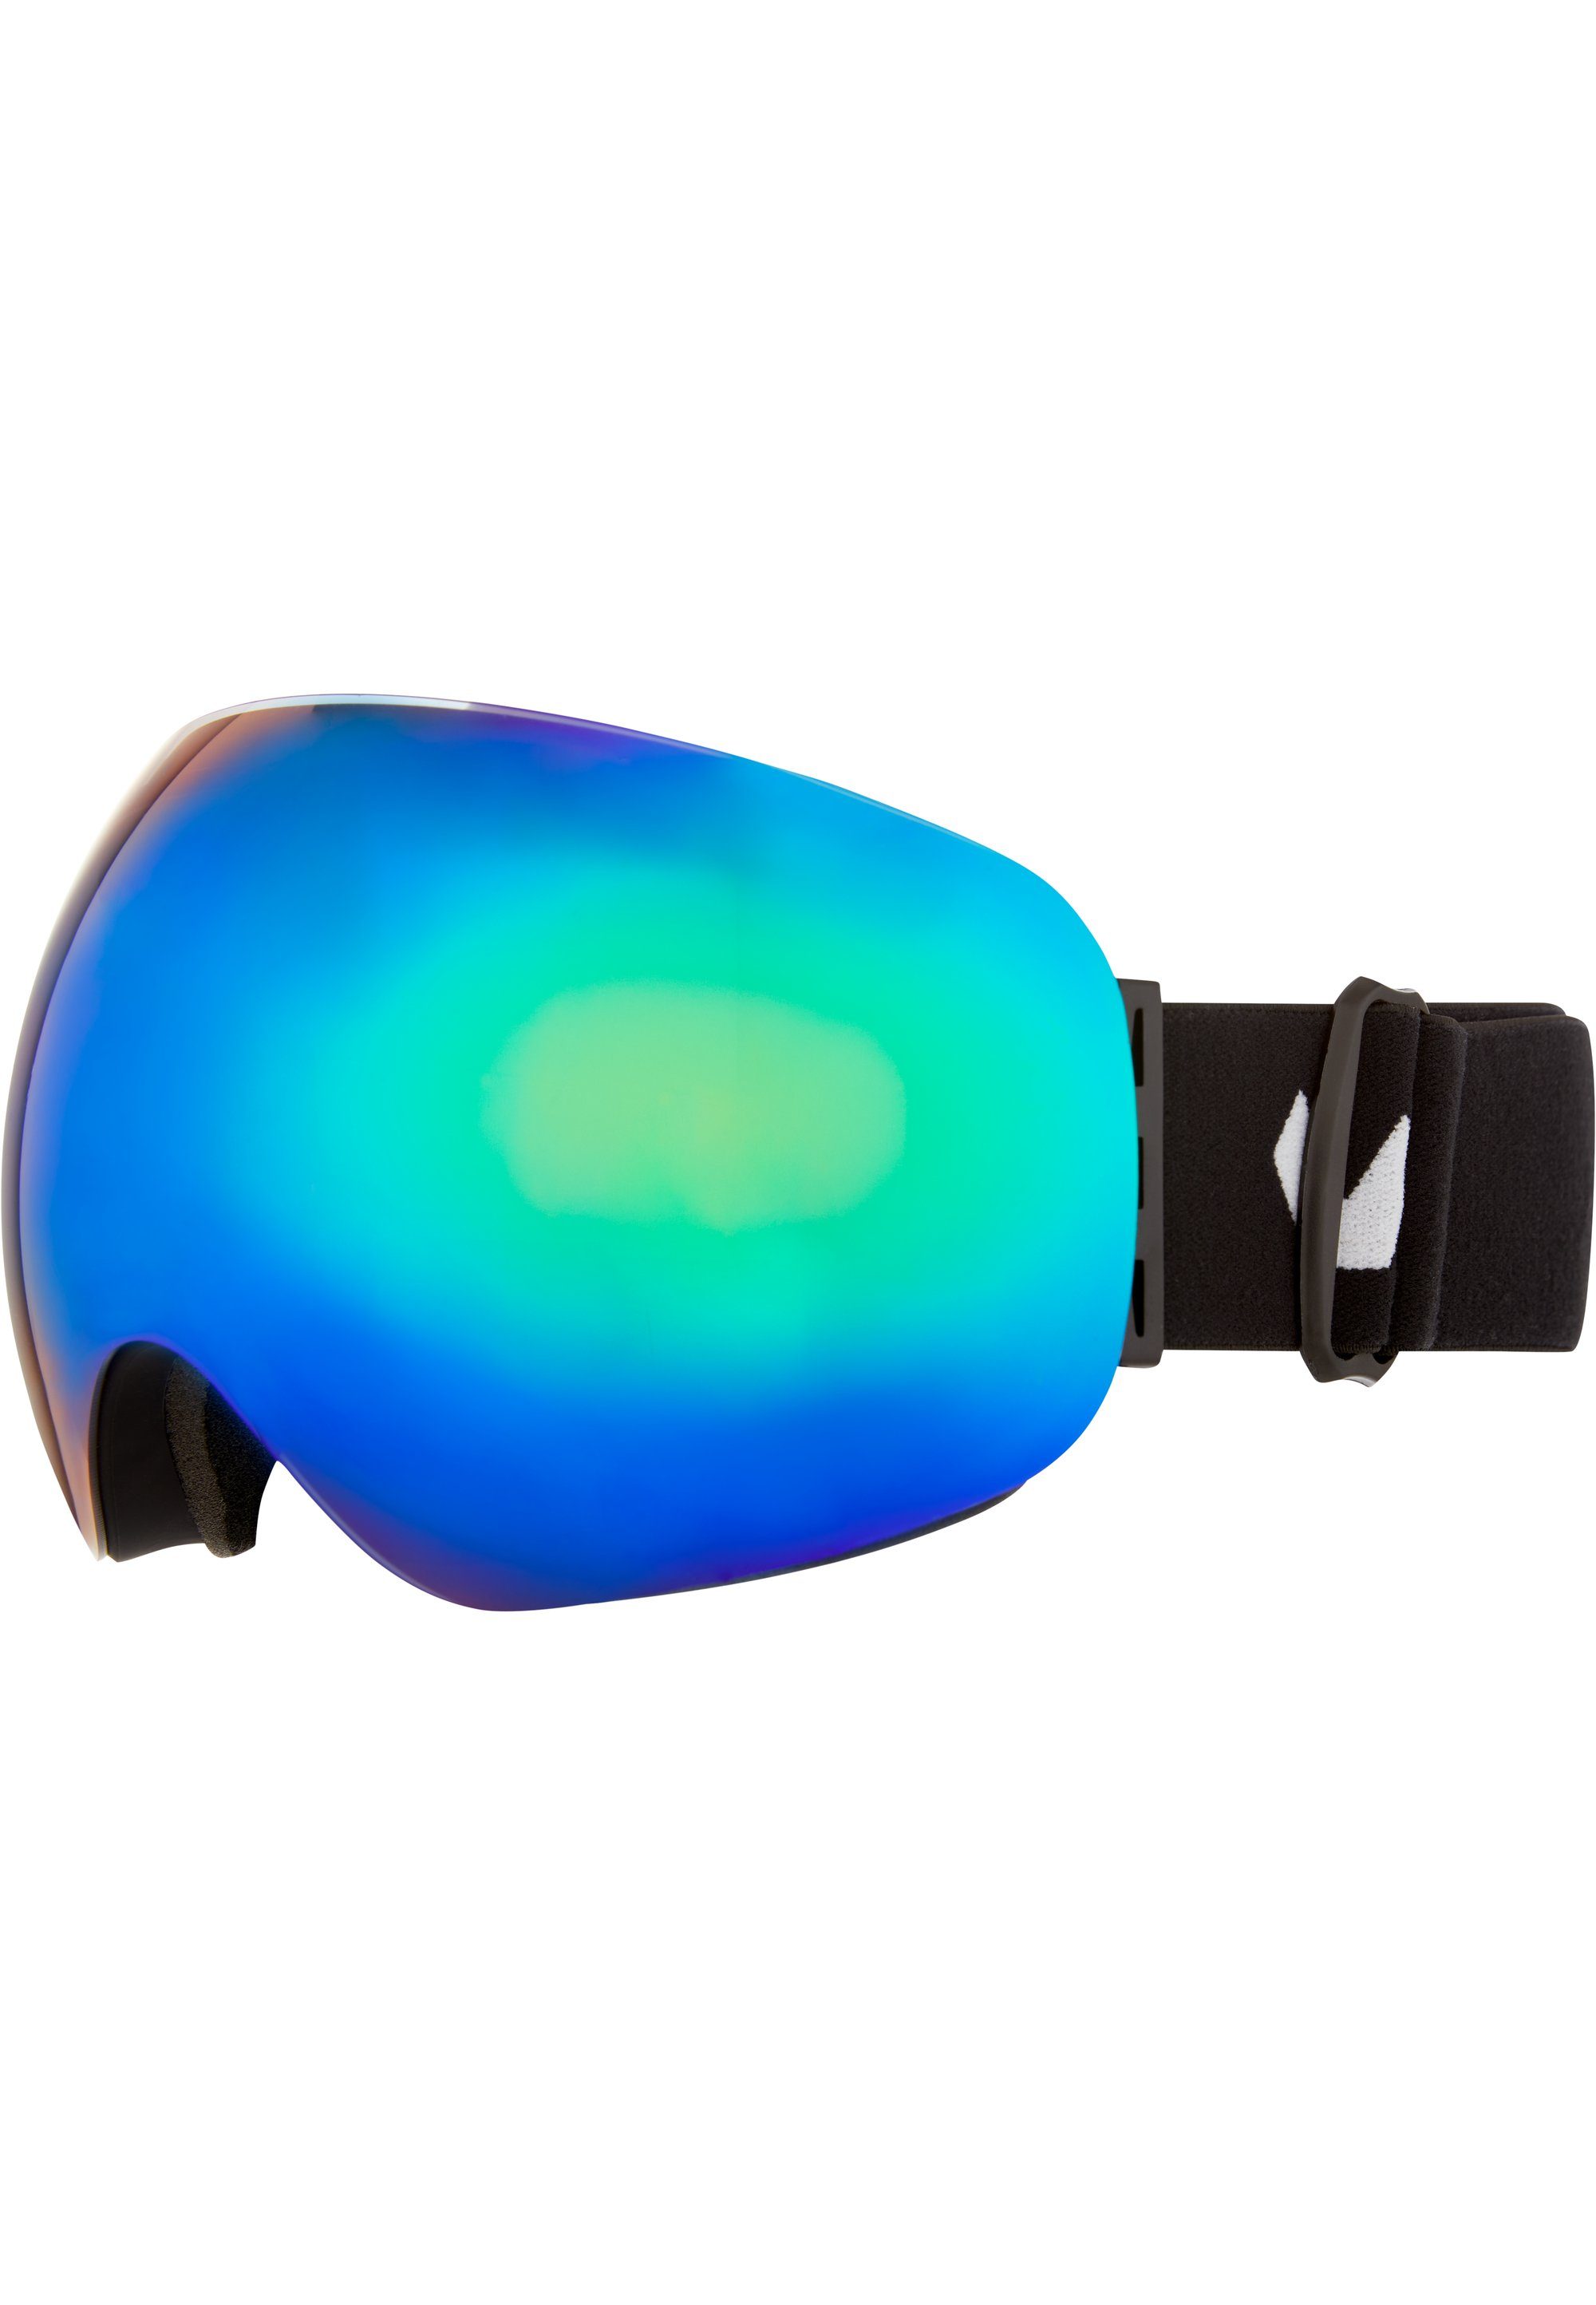 WHISTLER Skibrille WS6100, mit praktischer schwarz-blau Anti-Fog-Beschichtung